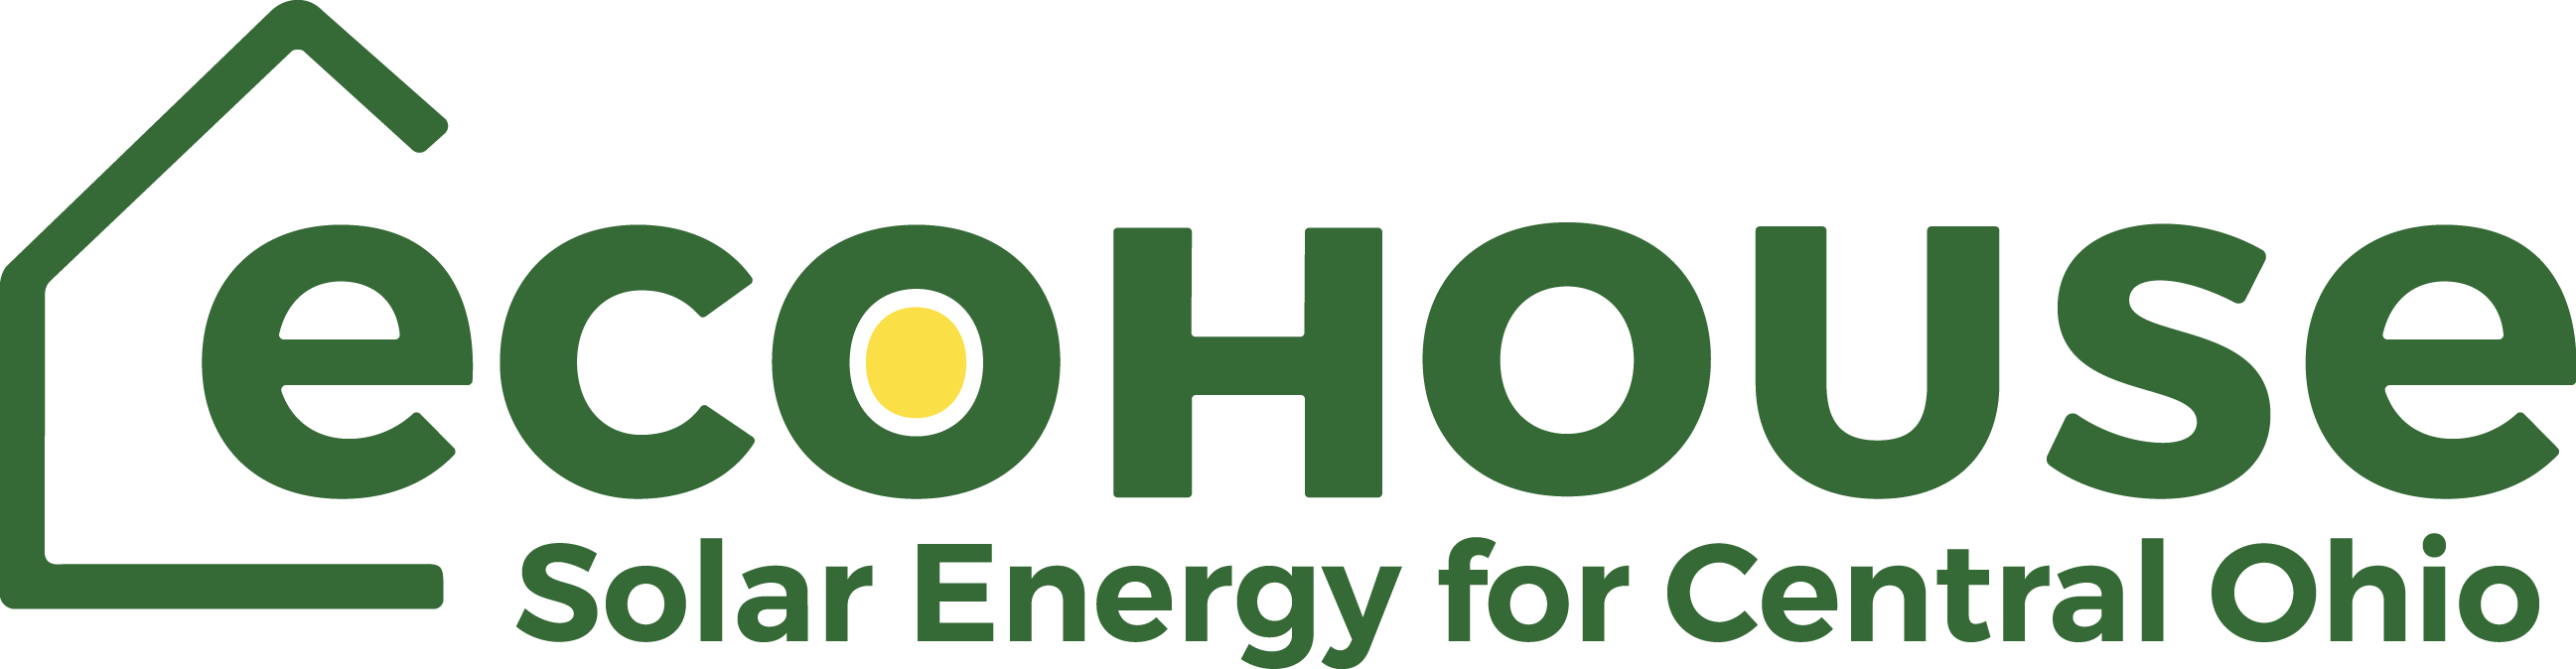 Ecohouse Solar LLC logo